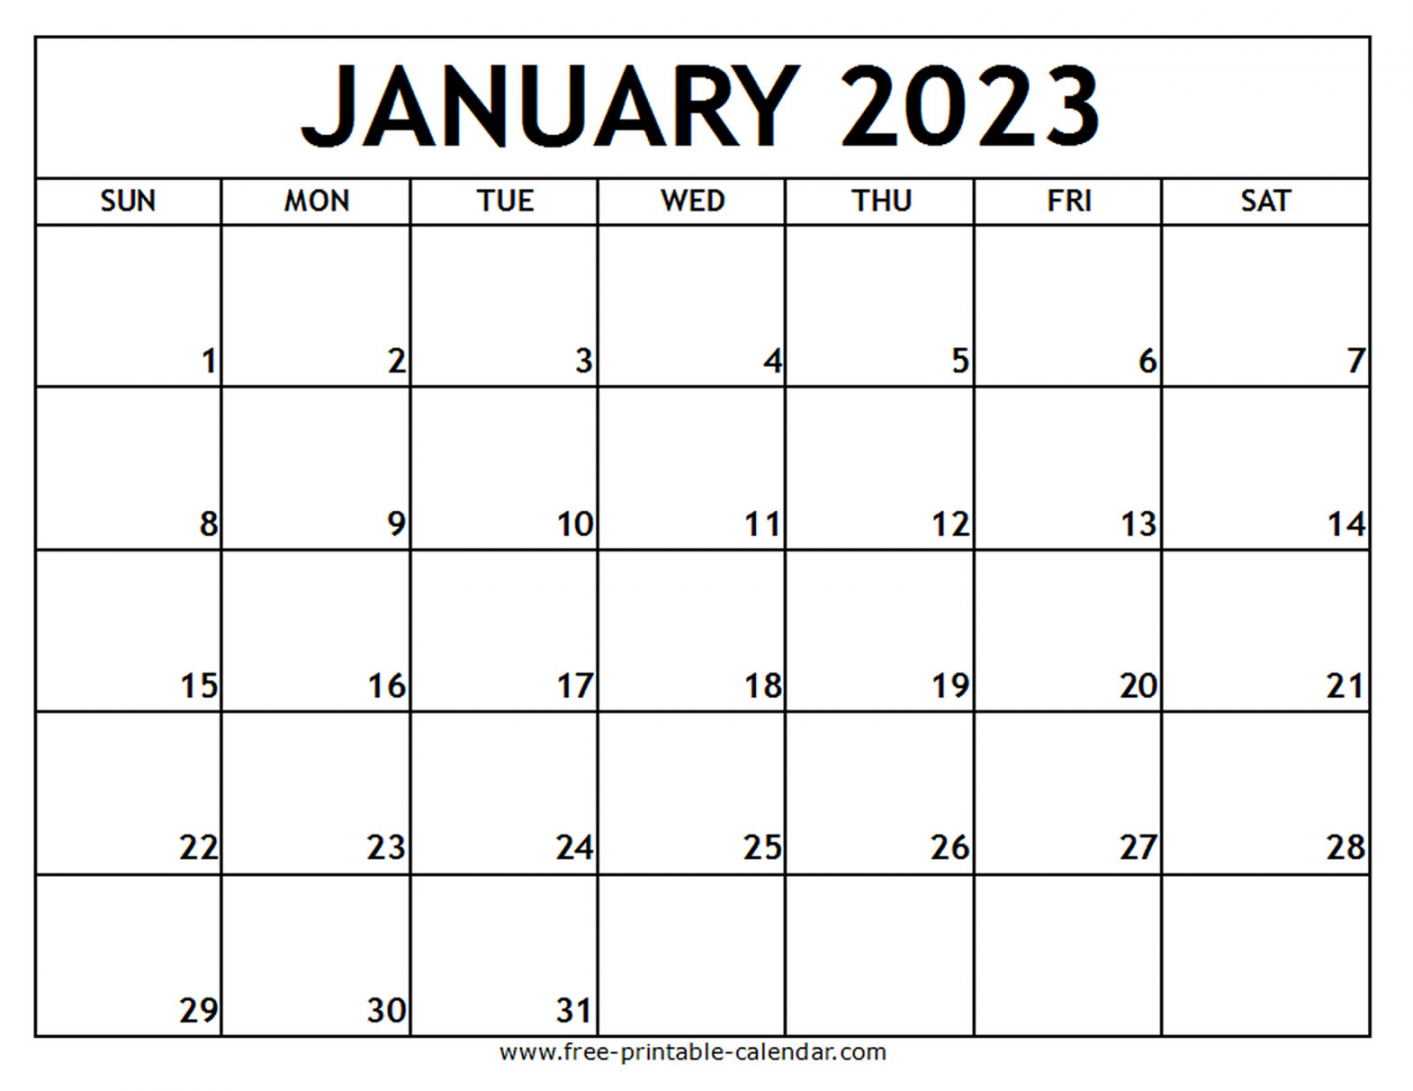 Free Printable January Calendar 2023 - Printable - January  Printable Calendar - Free-printable-calendar